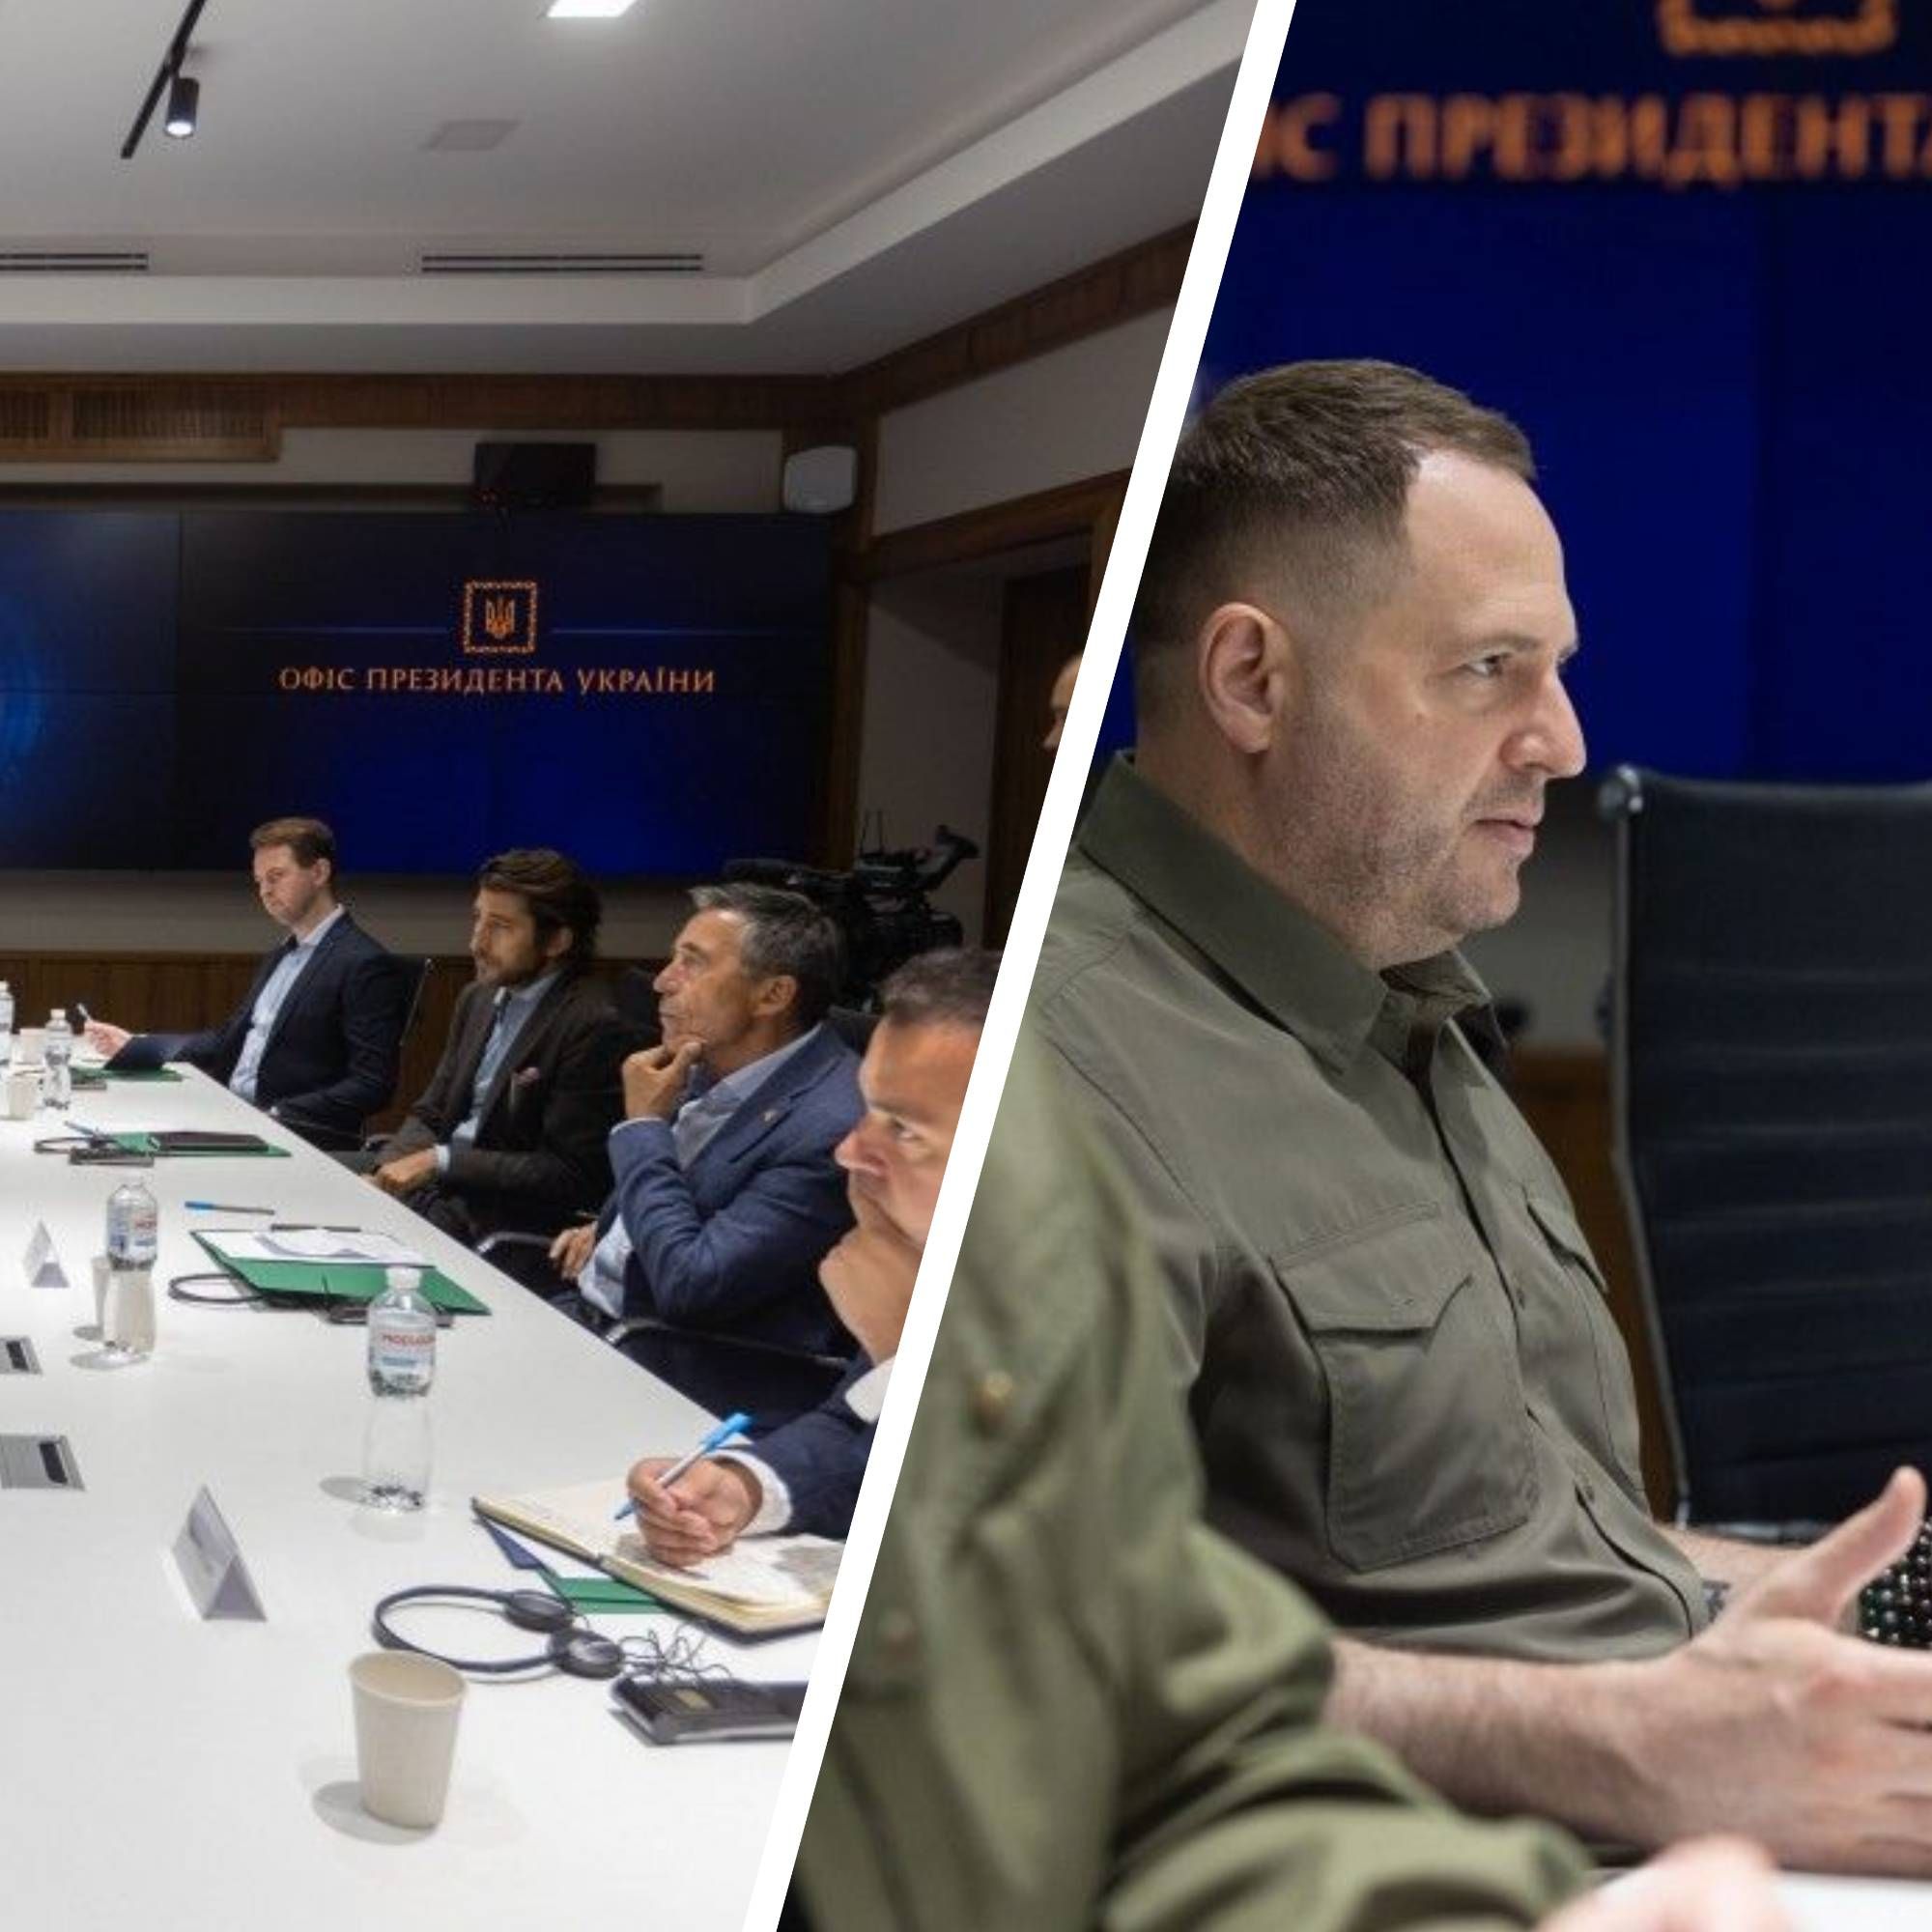 Рекомендації щодо гарантій безпеки для України - що презентували у Зеленського